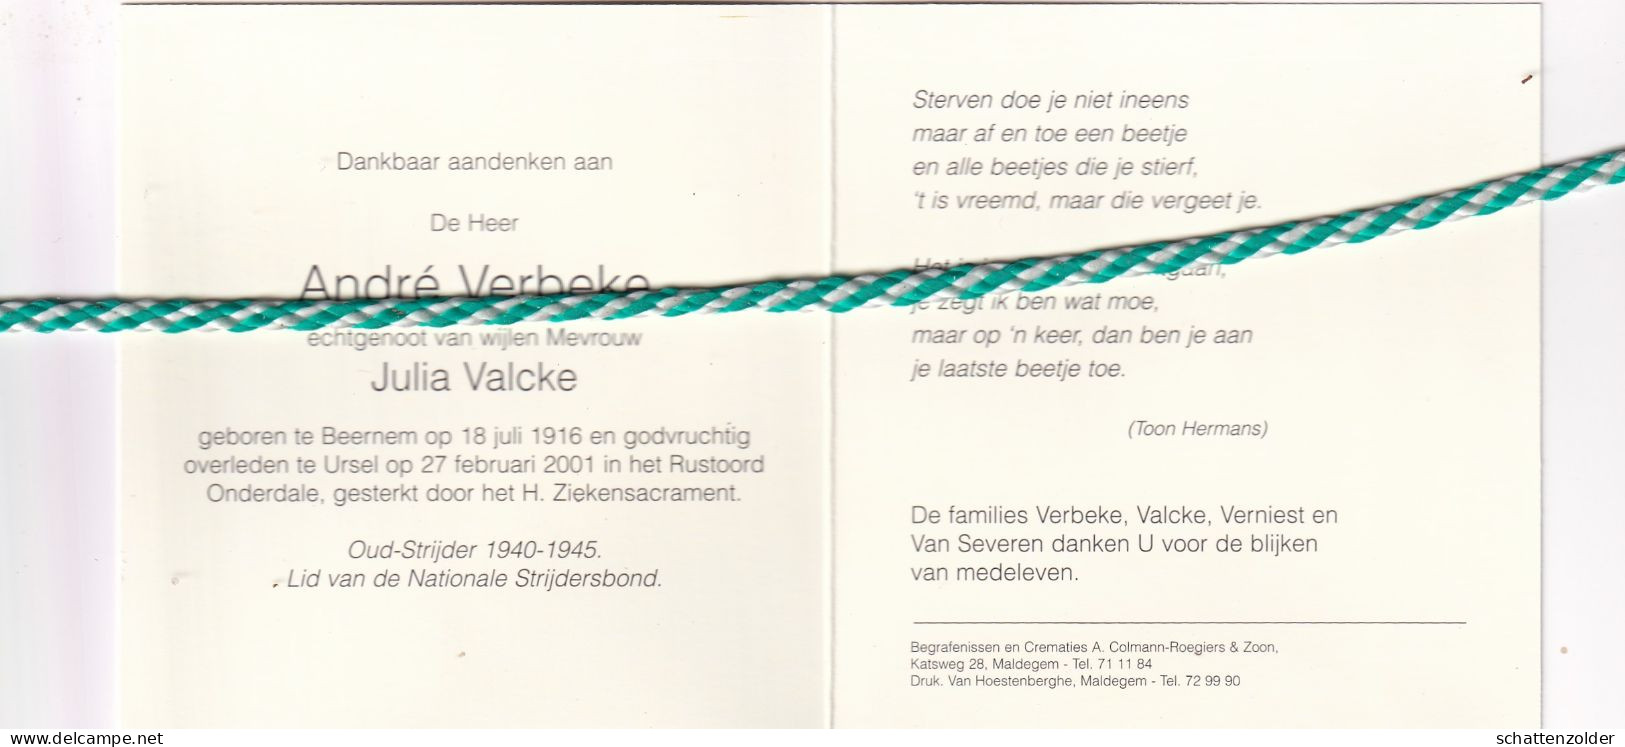 André Verbeke-Valcke, Beernem 1916, Ursel 2001. Oud-strijder 40-45. Foto - Todesanzeige